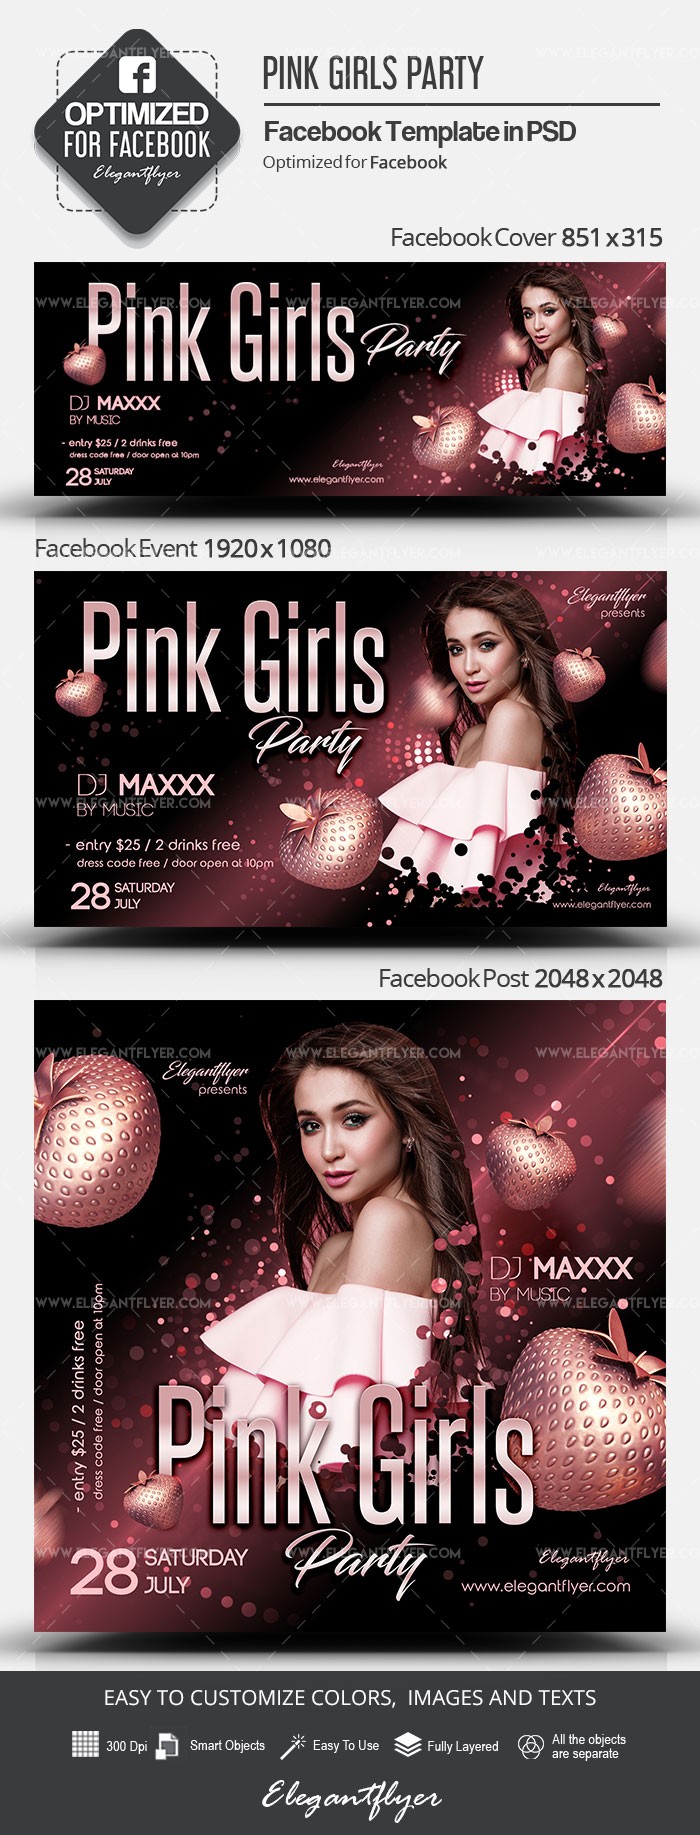 Różowa impreza dla dziewcząt na Facebooku by ElegantFlyer